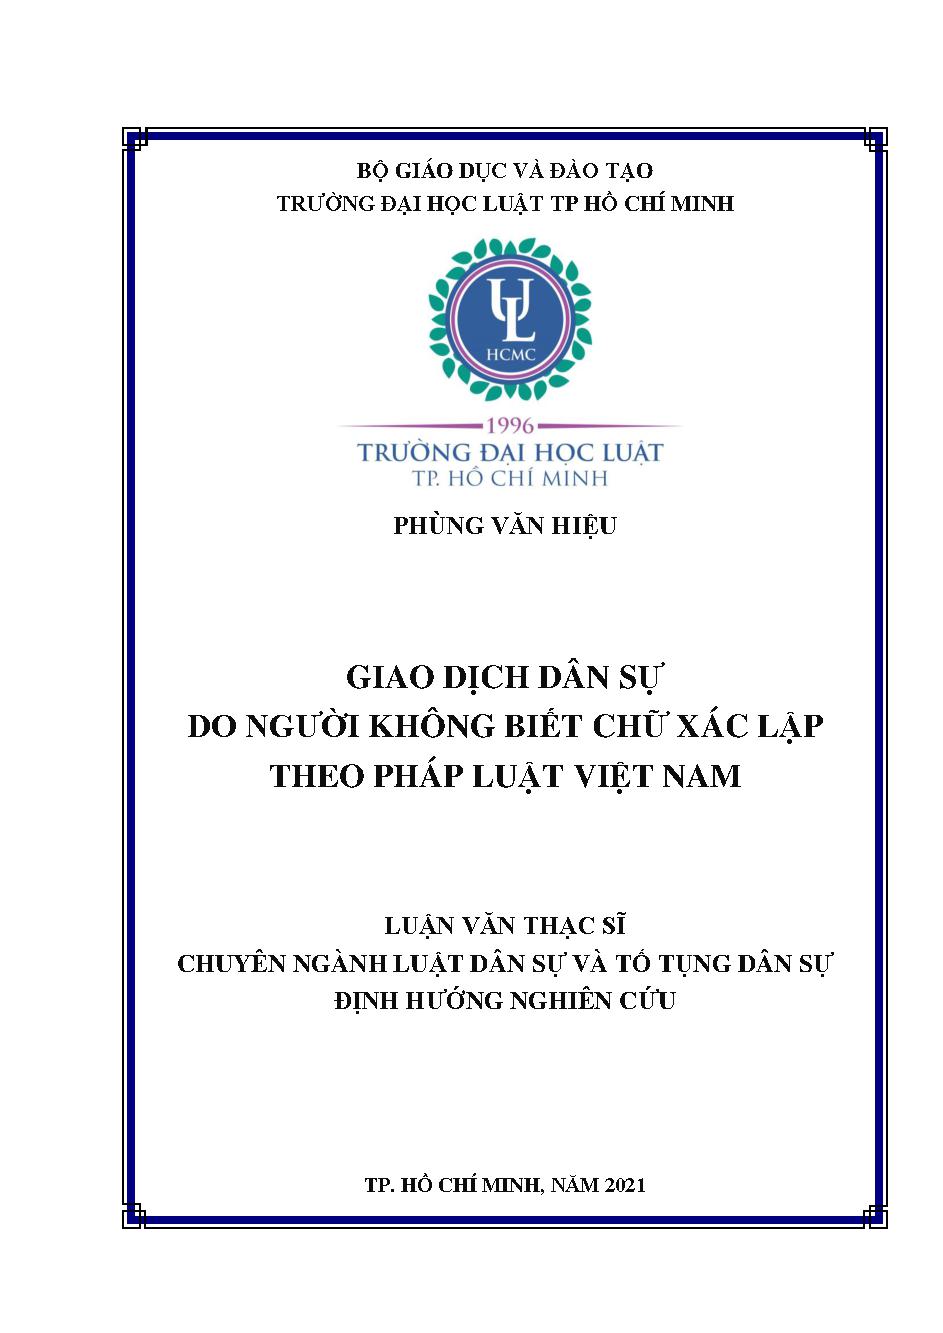 Giao dịch dân sự do người không biết chữ xác lập theo pháp luật Việt Nam